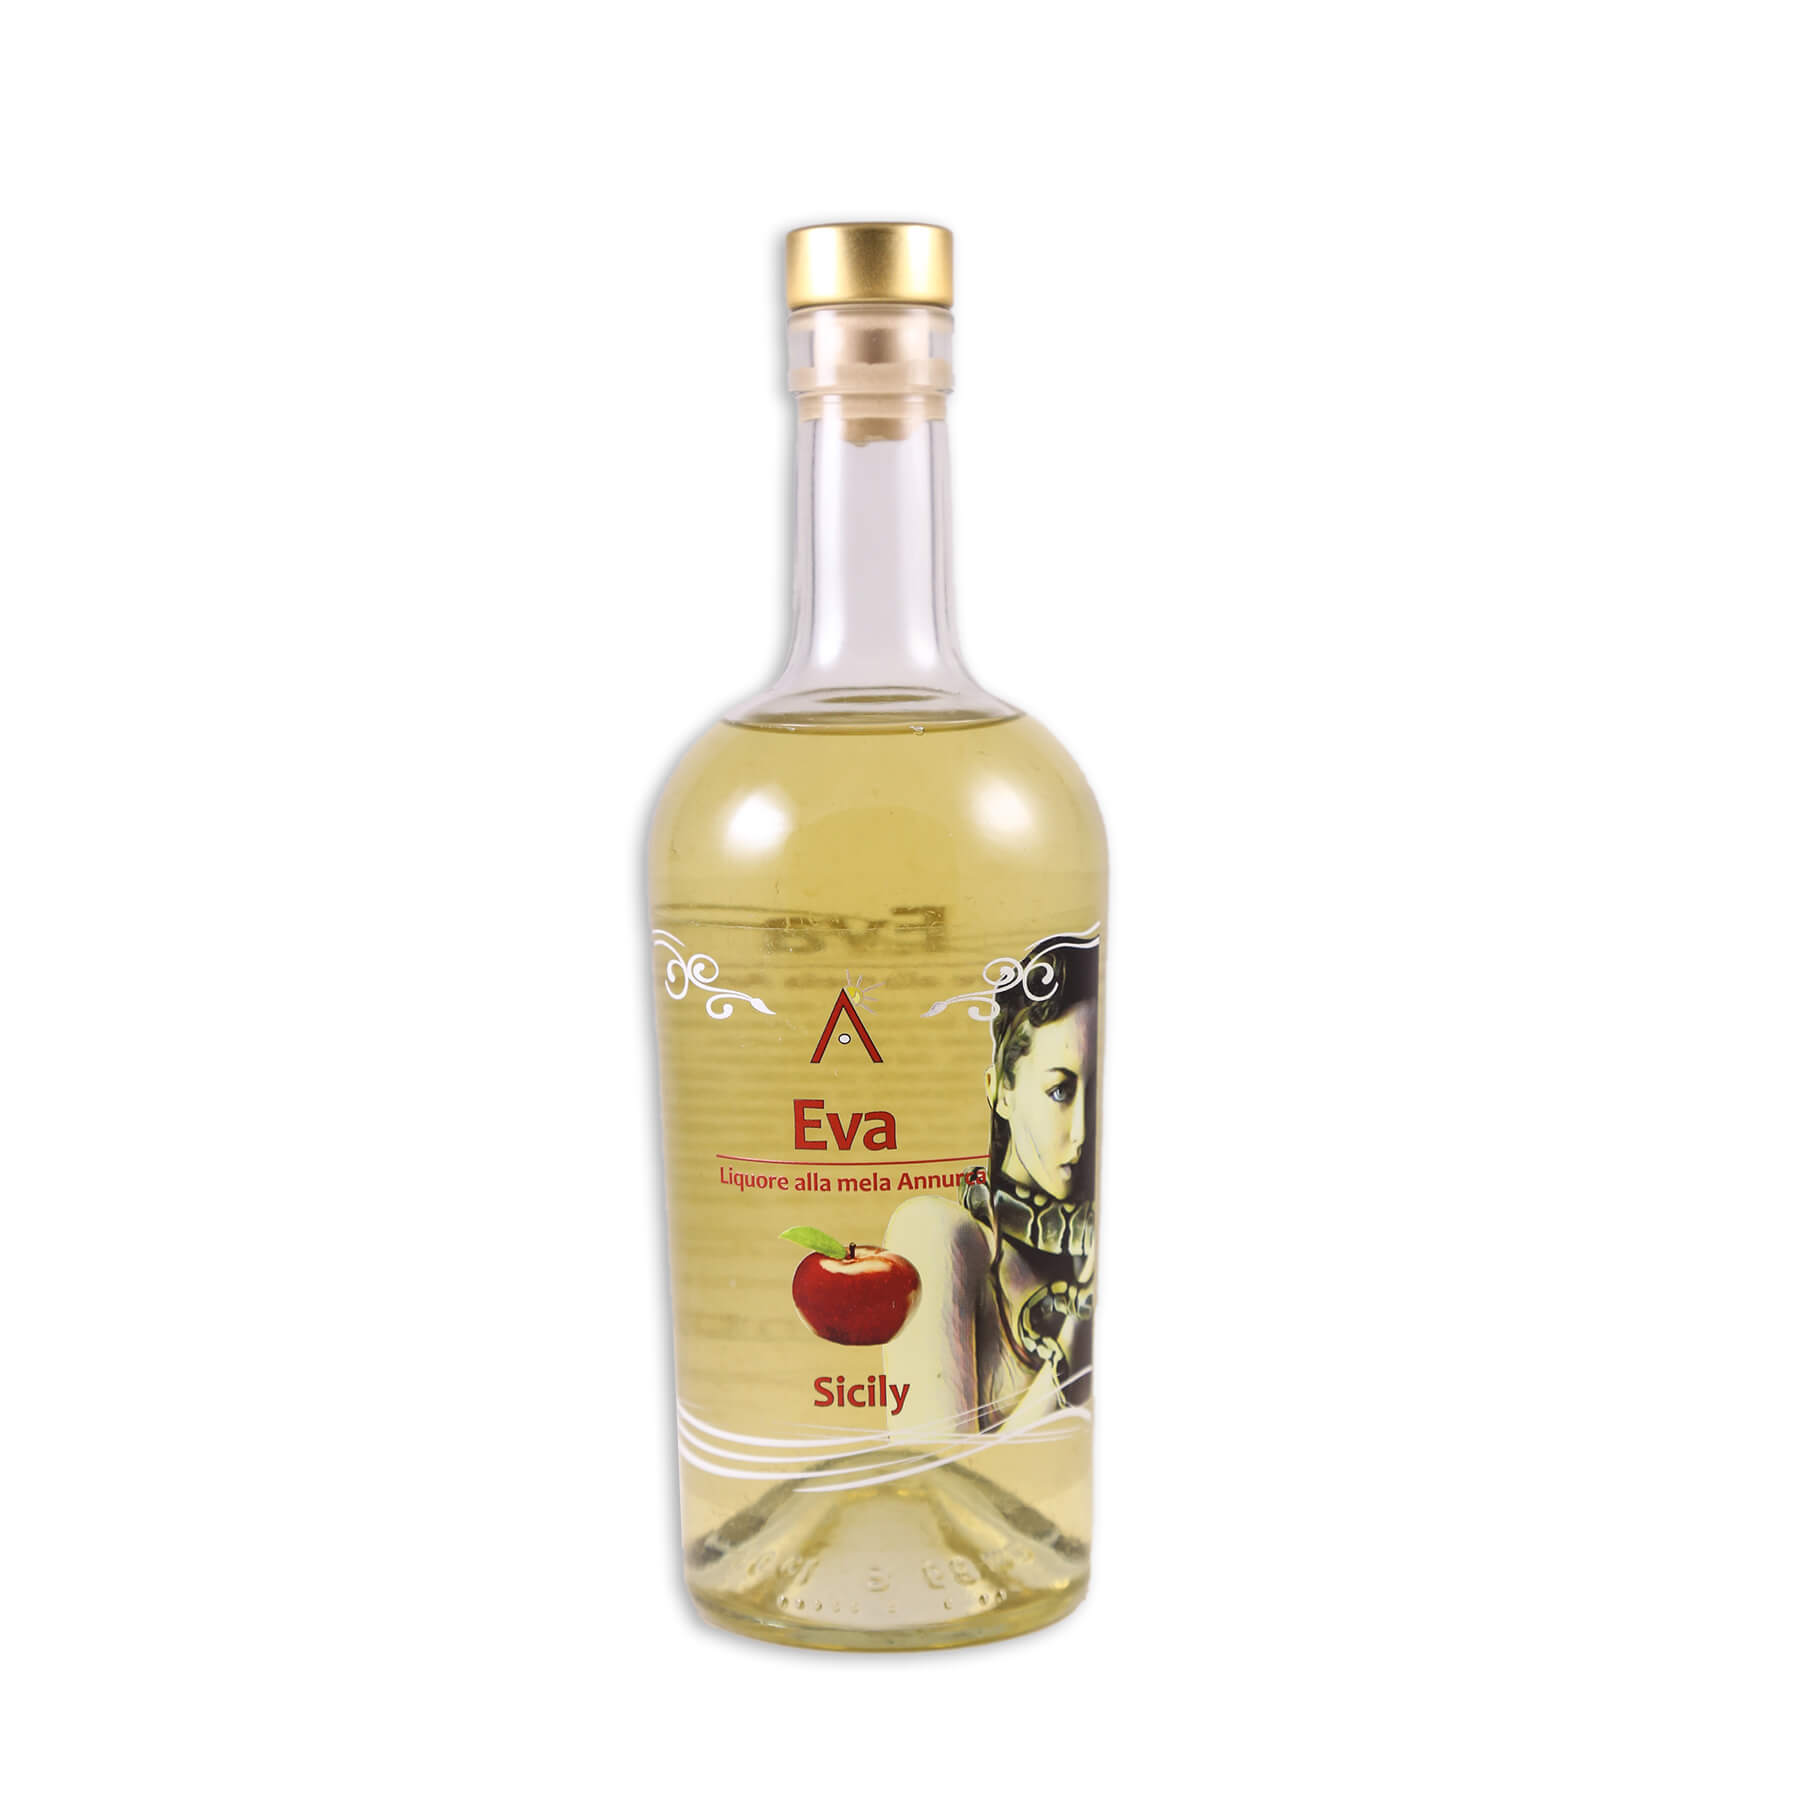 Mr.Bontà - Liquore Eva alle mele